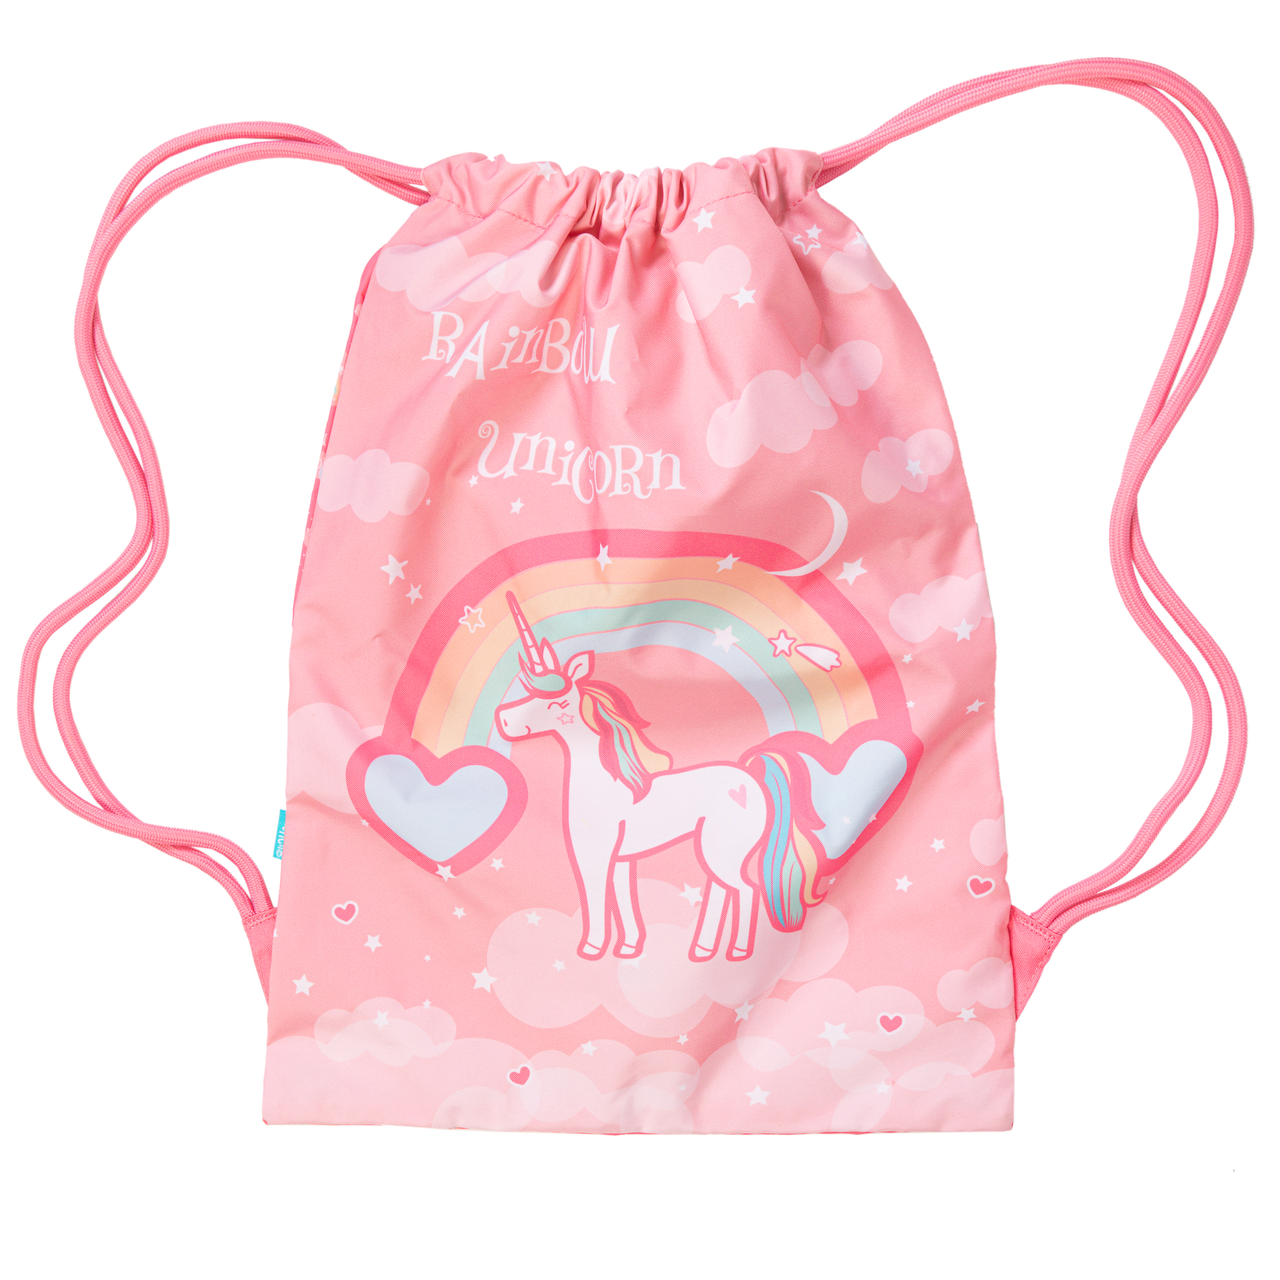 Big Drawstring Bag - Rainbow Unicorn